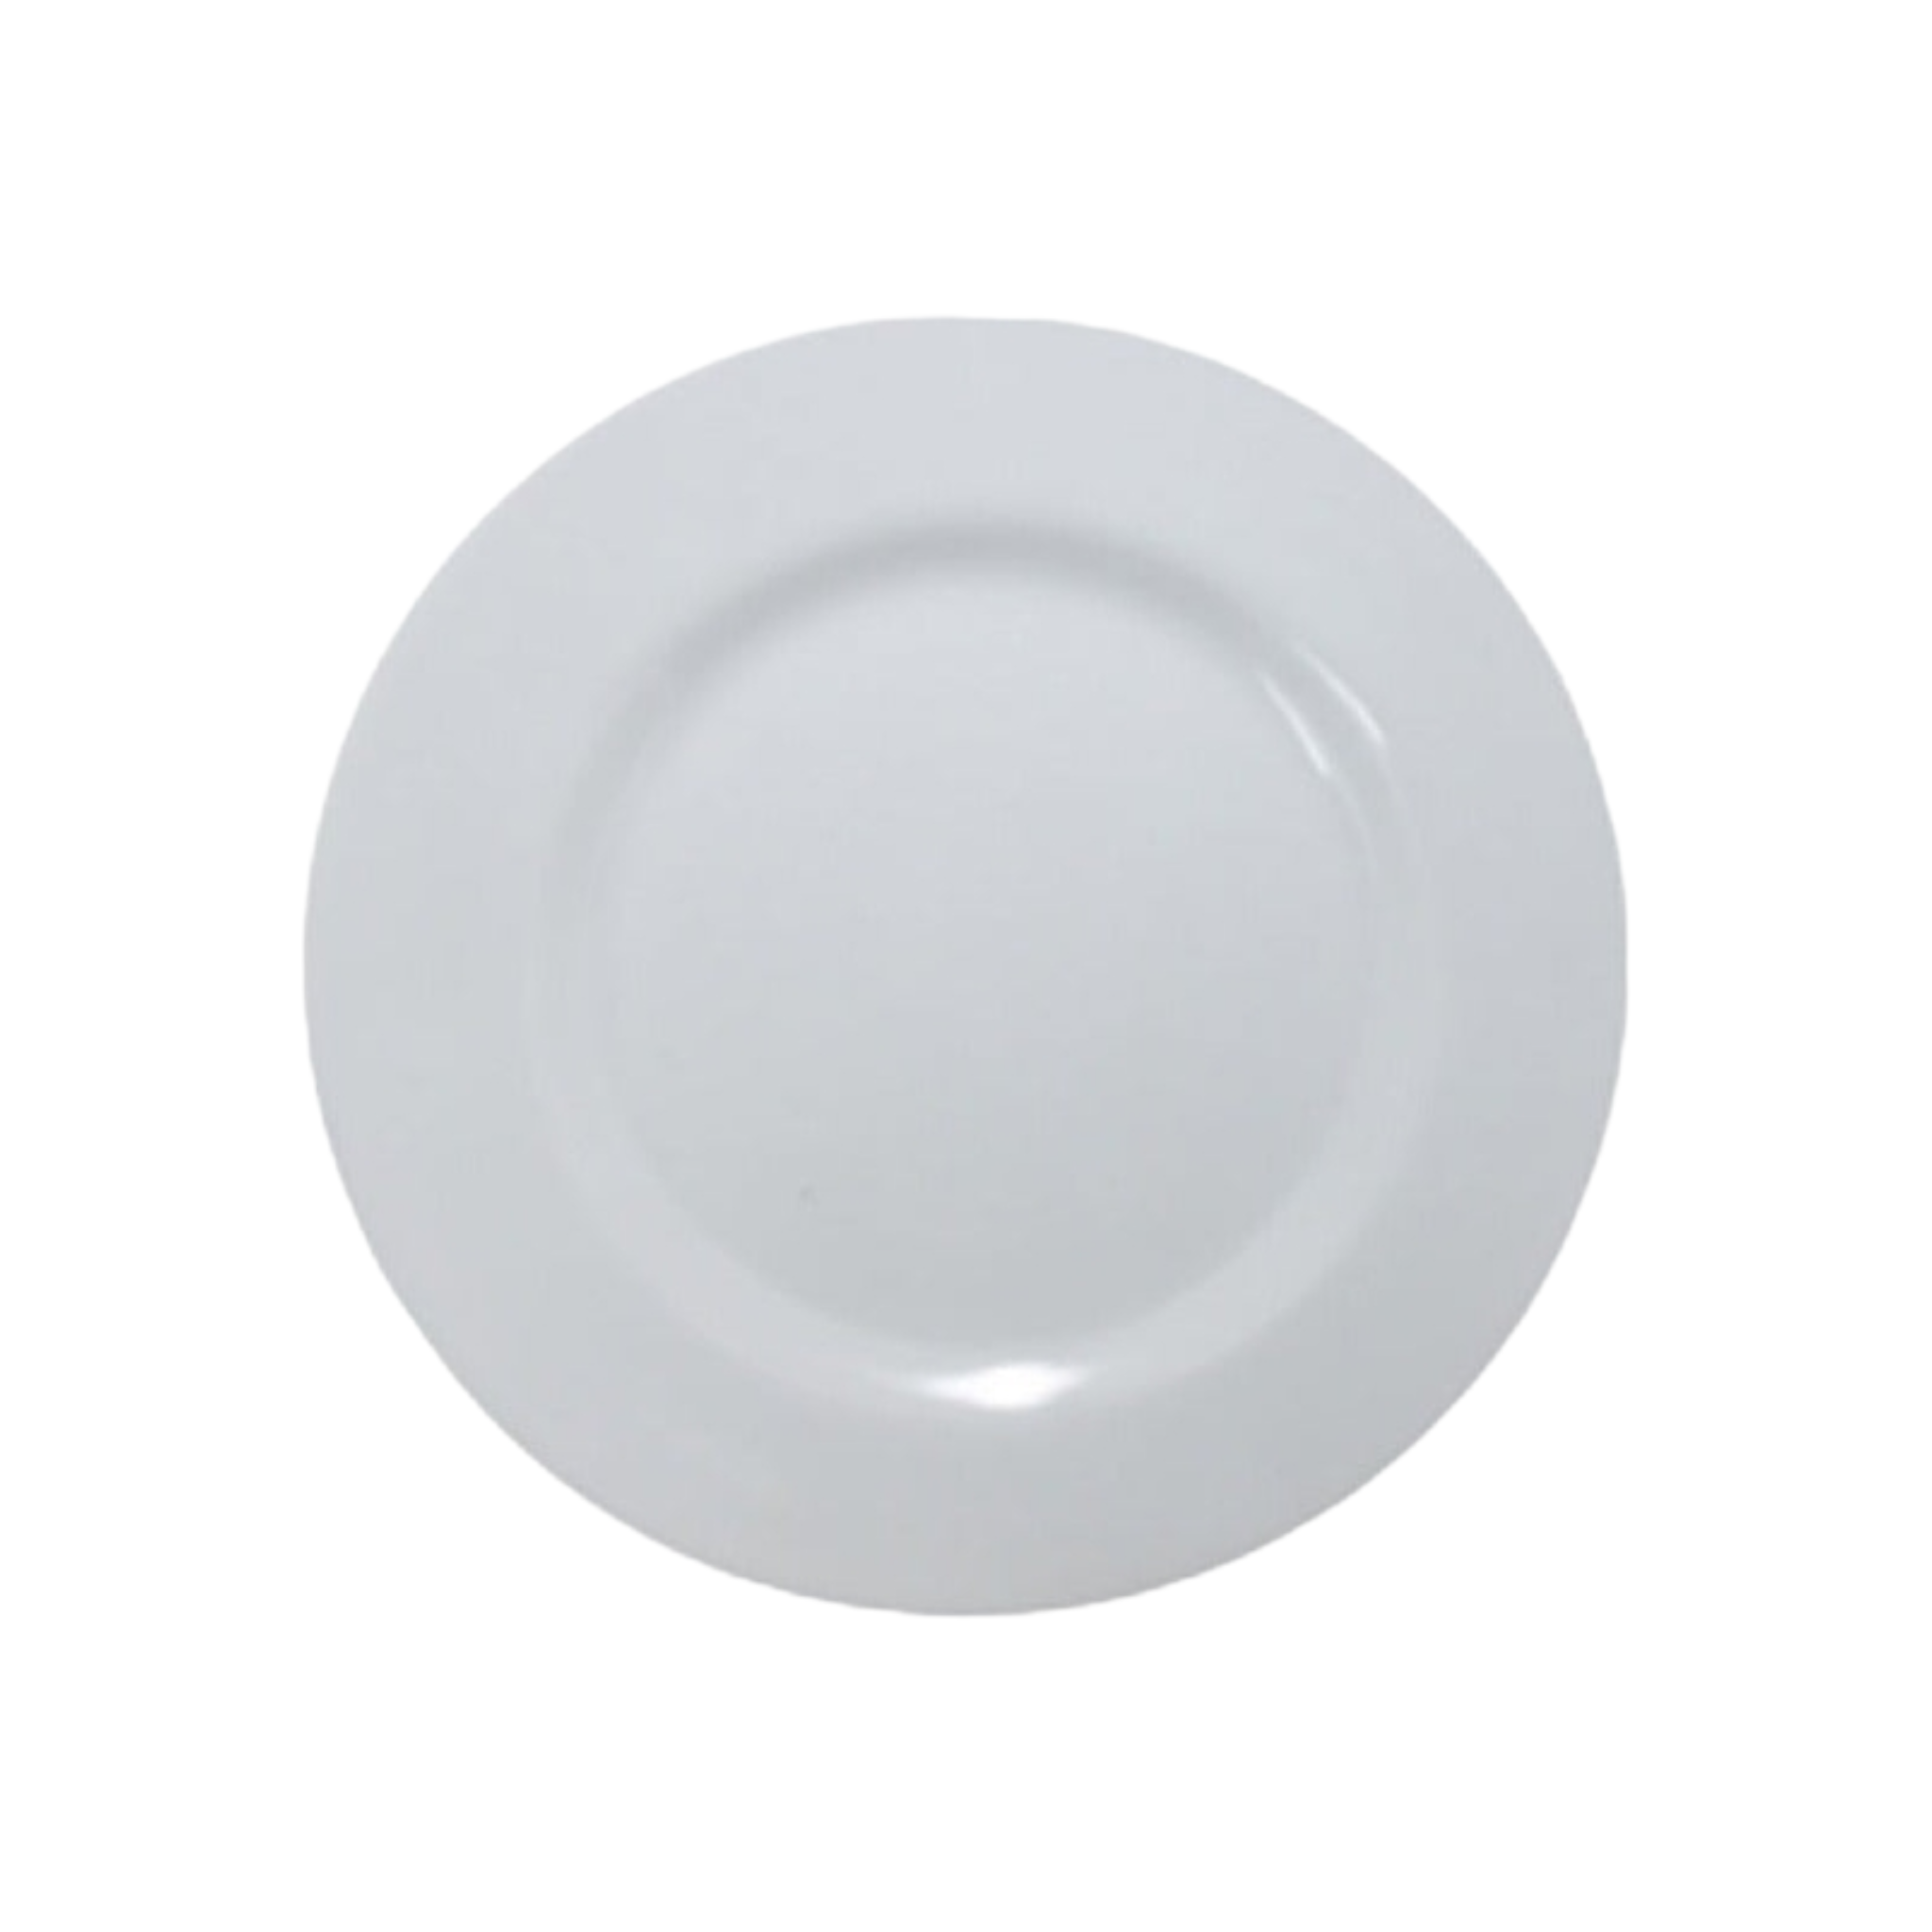 Melamine White Side Plate 13046